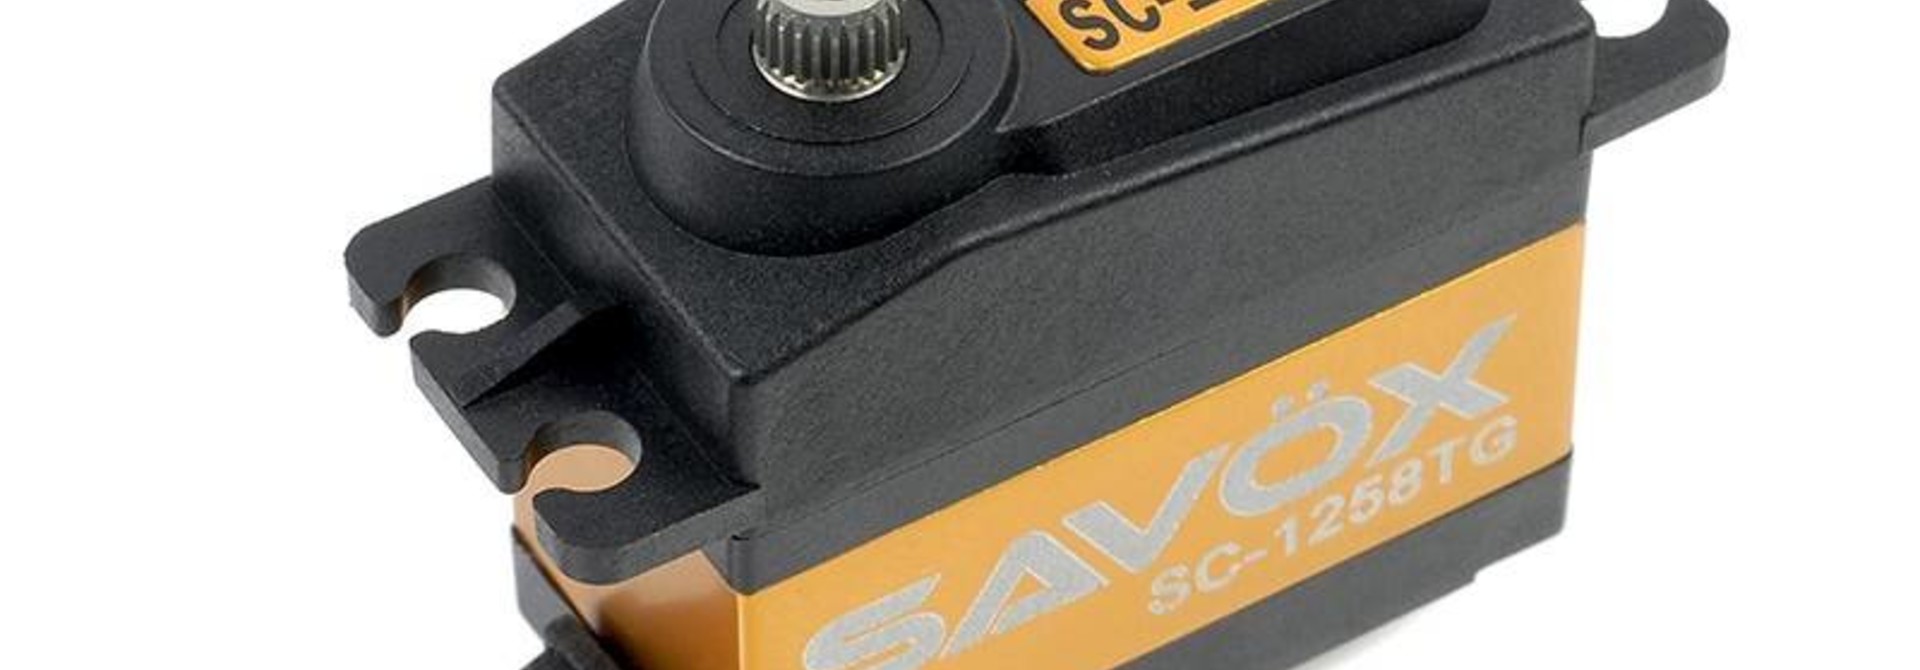 Savox - Servo - SC-1258TG - Digital - Coreless Motor - Titanium tandwielen